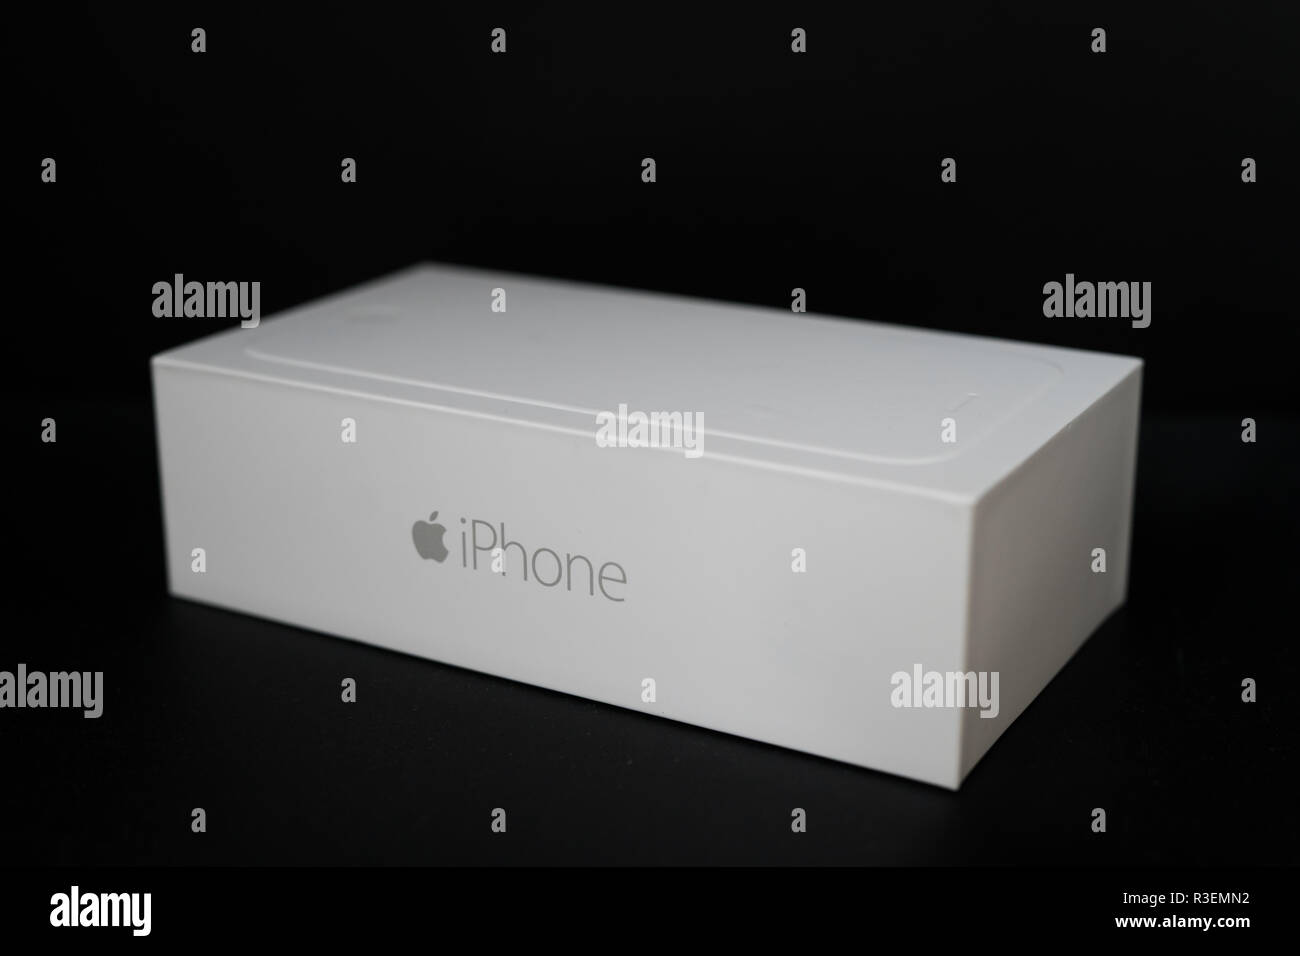 Apple iPhone 6 box là một chiếc hộp đẹp, tinh tế và sang trọng, thể hiện được chất lượng và đẳng cấp của sản phẩm. Bên trong hộp có đầy đủ phụ kiện bao gồm cáp sạc, sạc trực tiếp, tai nghe... giúp người dùng sử dụng iPhone dễ dàng hơn. Hãy nhanh tay click để xem chi tiết sản phẩm nhé.